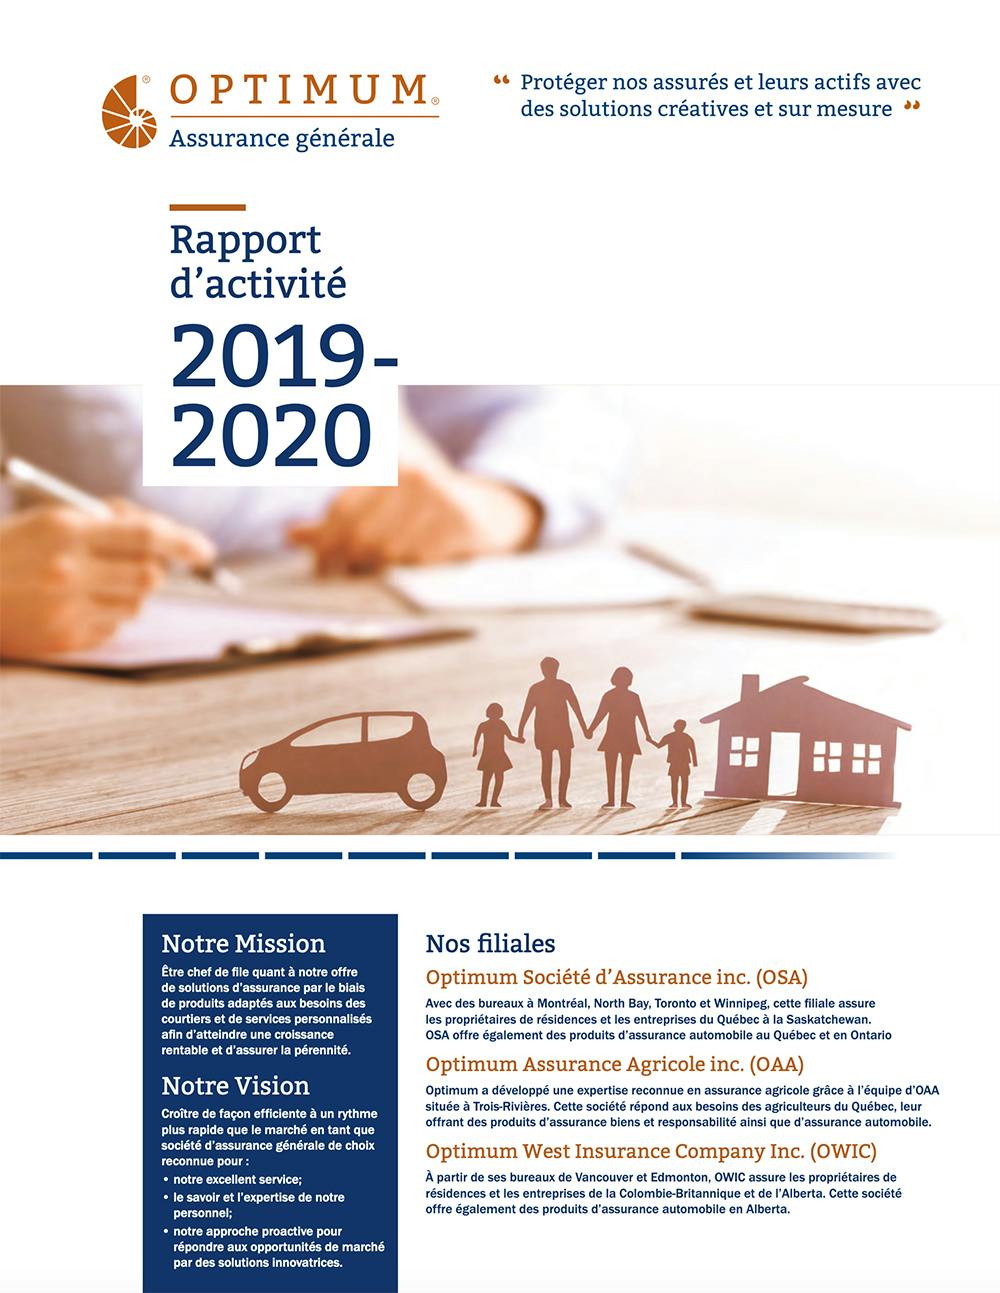 OGI - 2020-2019 Rapport d'activité